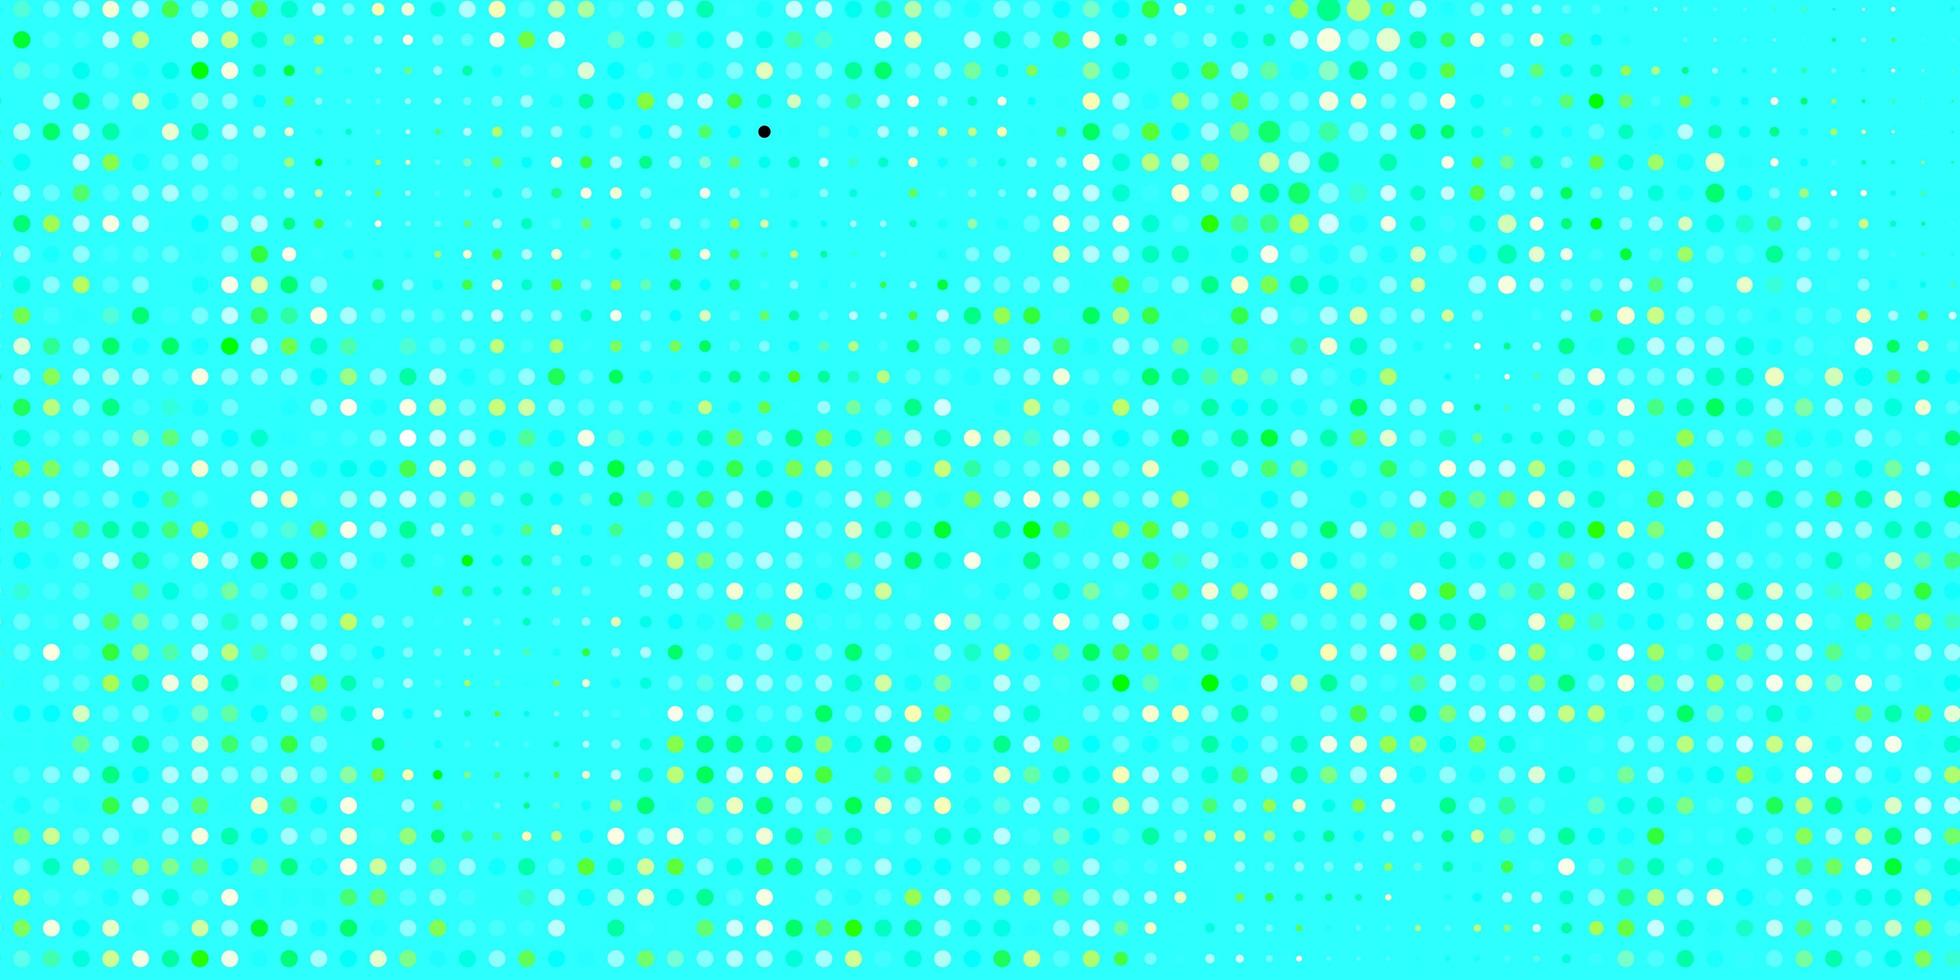 lichtblauwe groene vectorlay-out met cirkelvormen moderne abstracte illustratie met kleurrijke cirkelvormen nieuwe sjabloon voor een merkboek vector